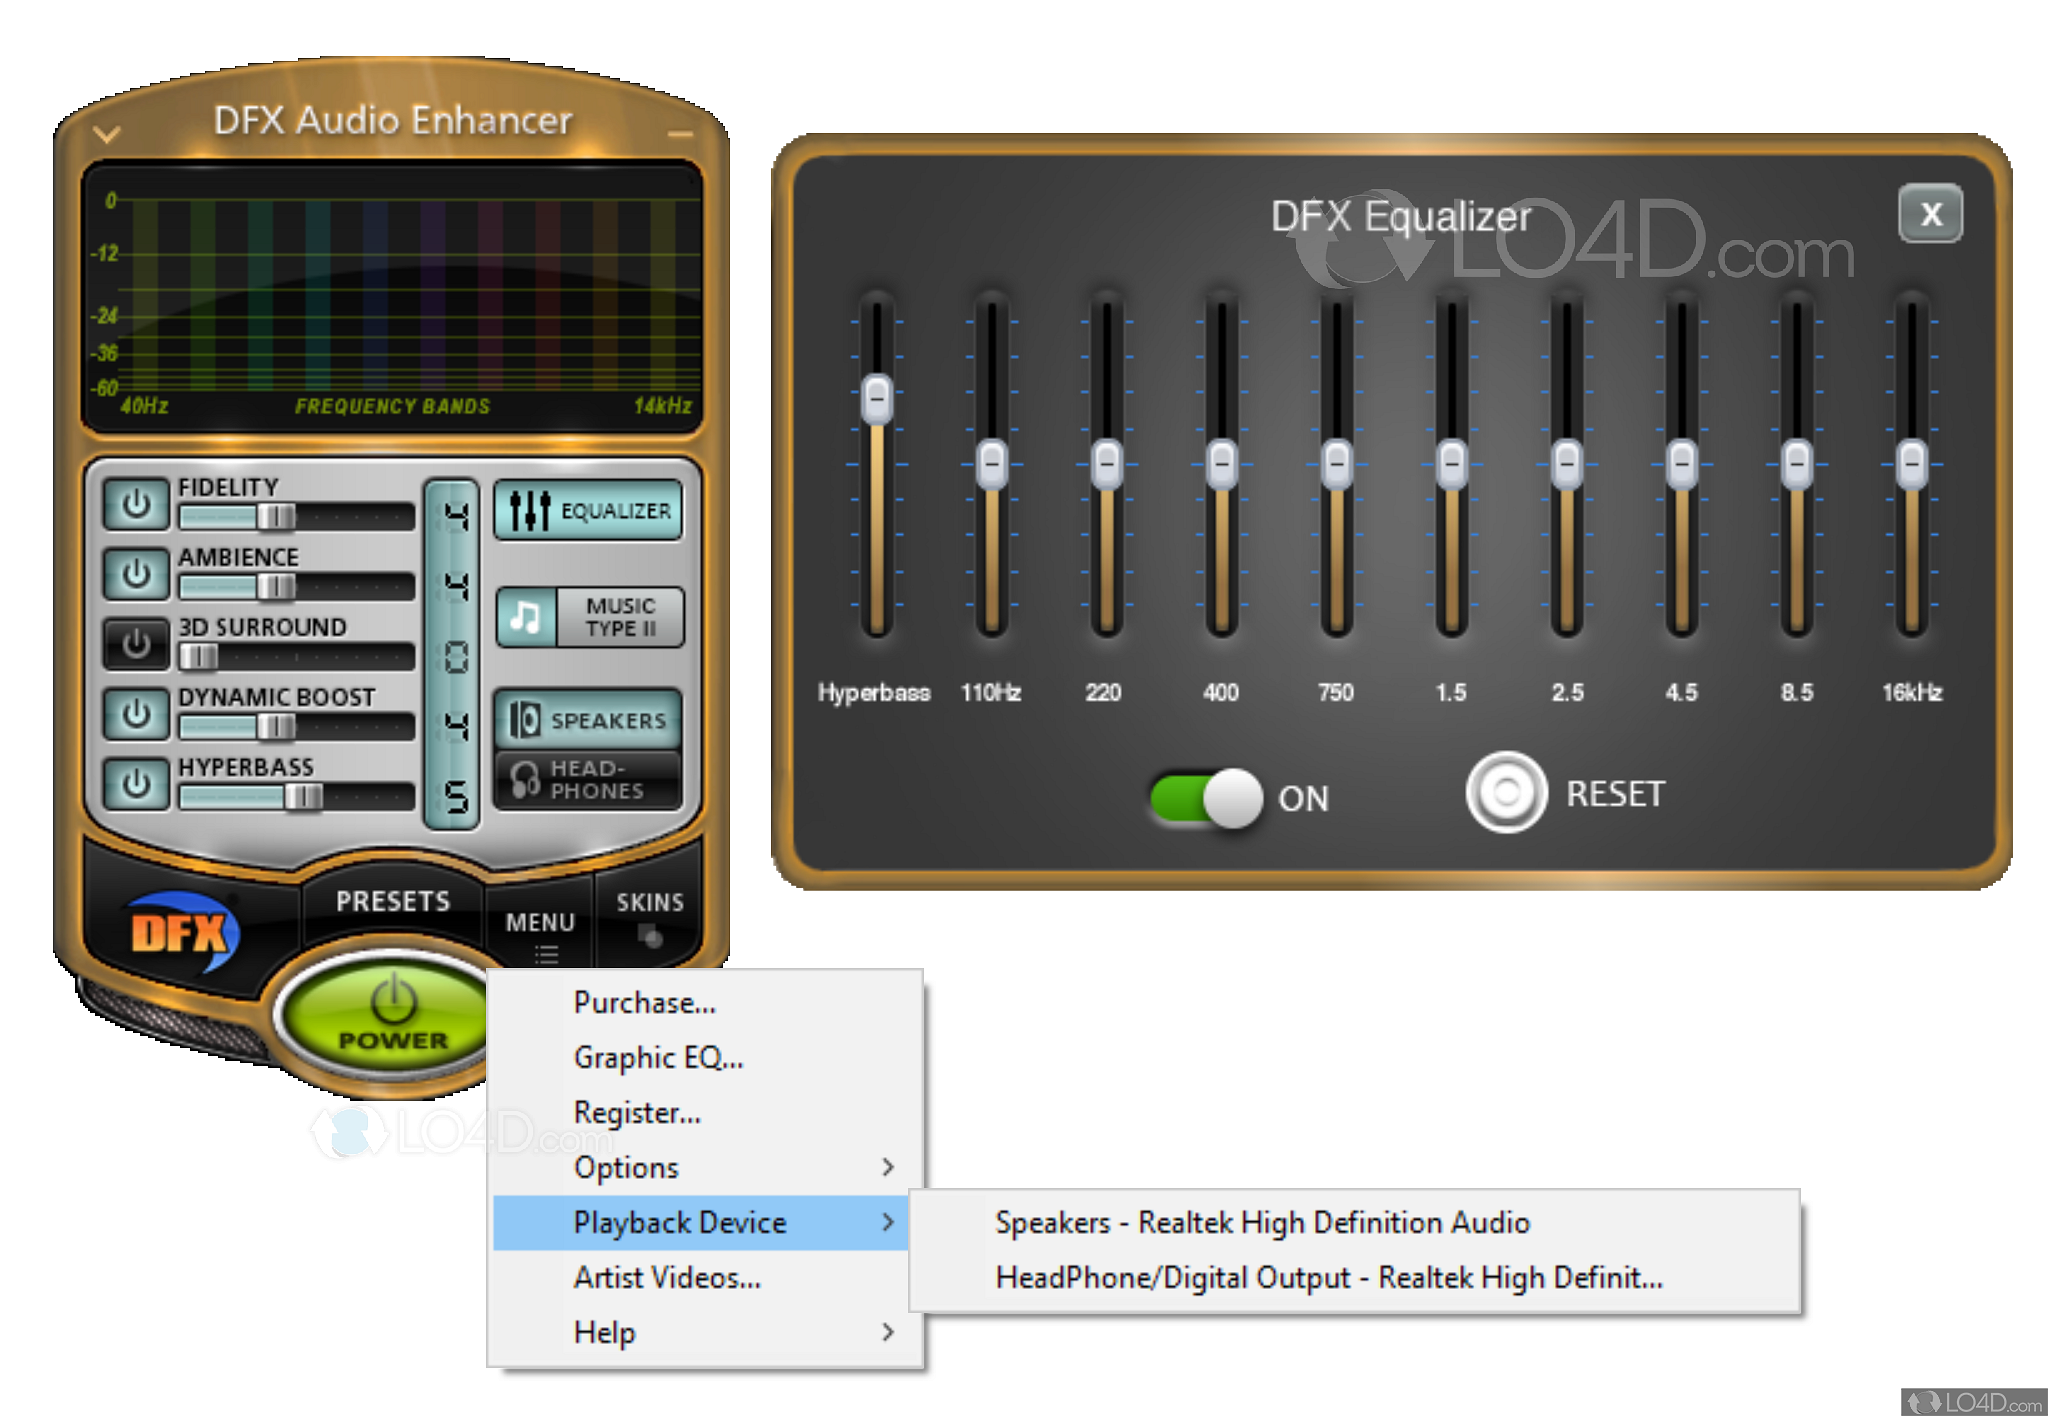 dfx audio enhancer plus version free download